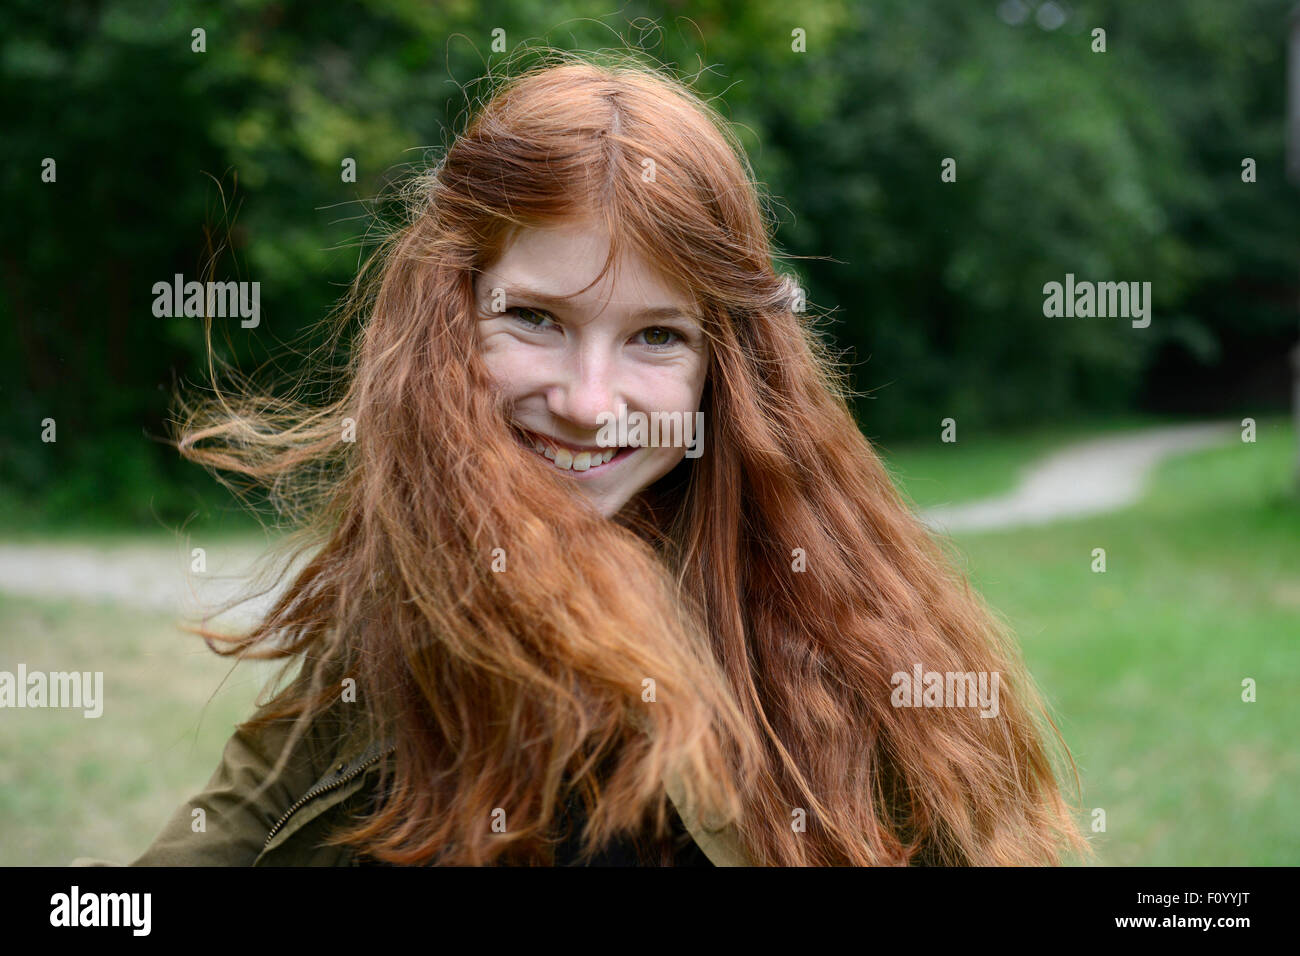 Adolescente con largo pelo rojo, moviendo su cabello, Alemania Foto de stock